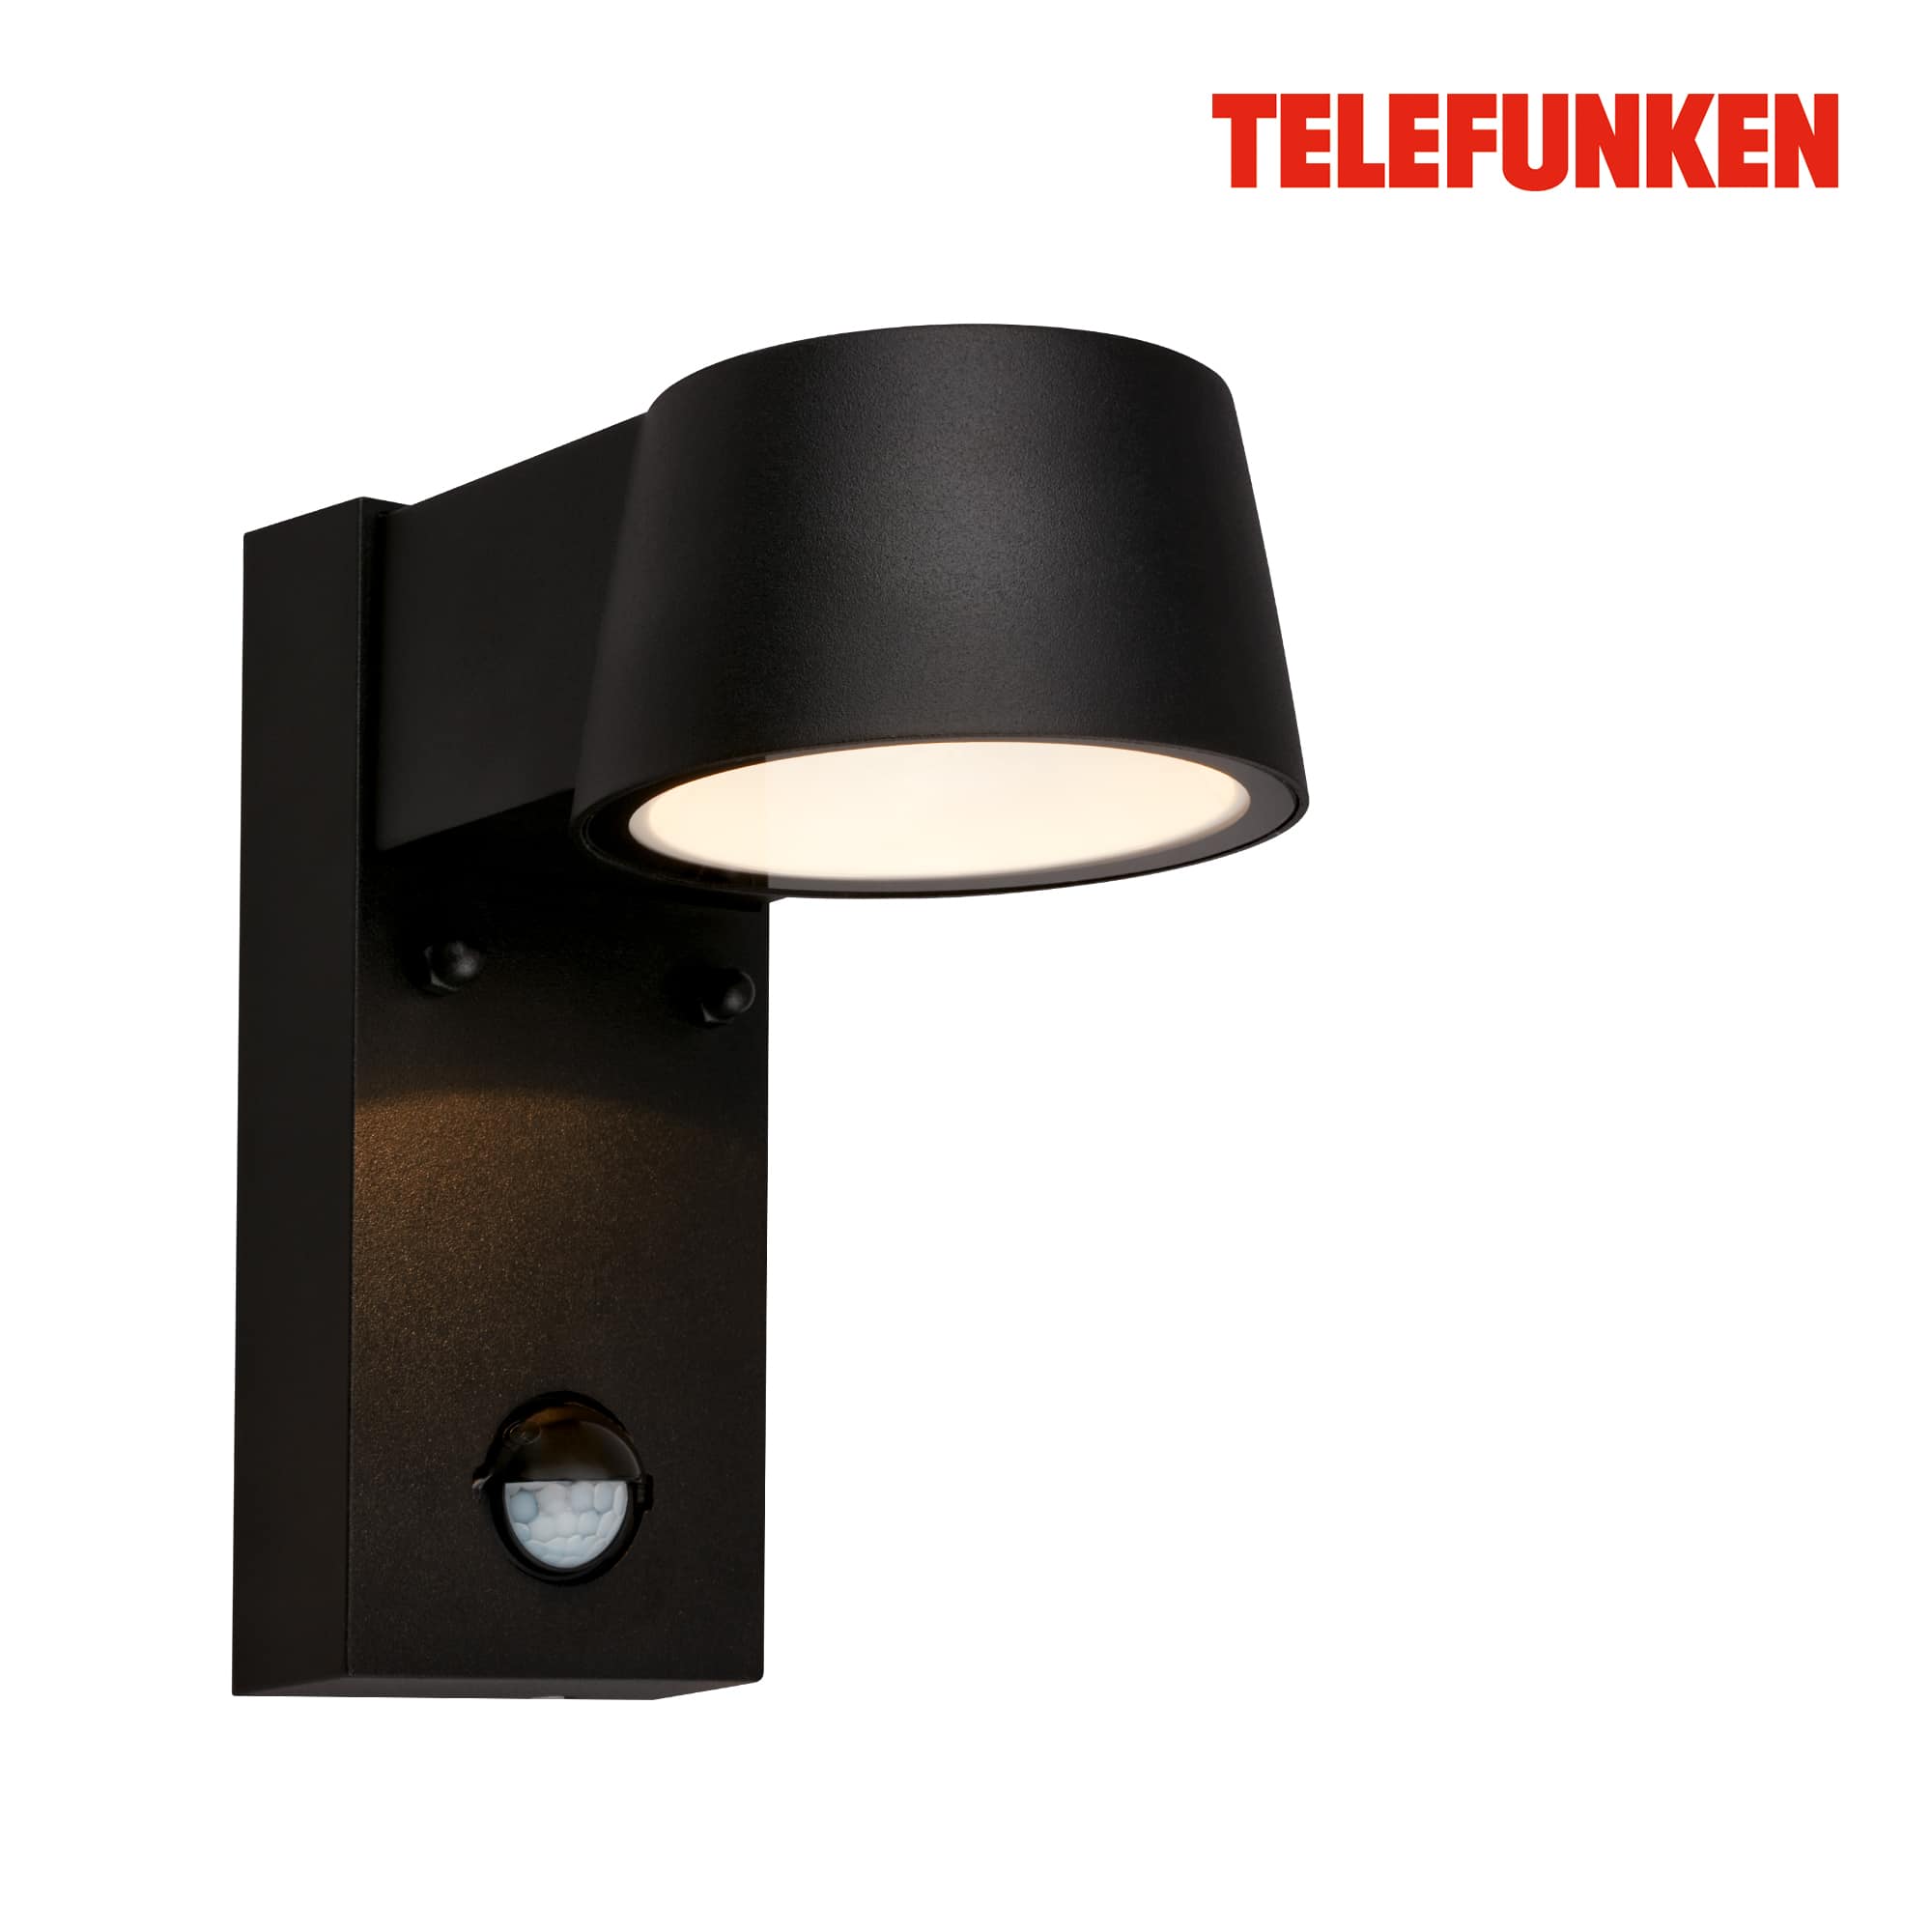 Lampada da parete Telefunken LED, rilevatore di movimento, sensore crepuscolare, nero